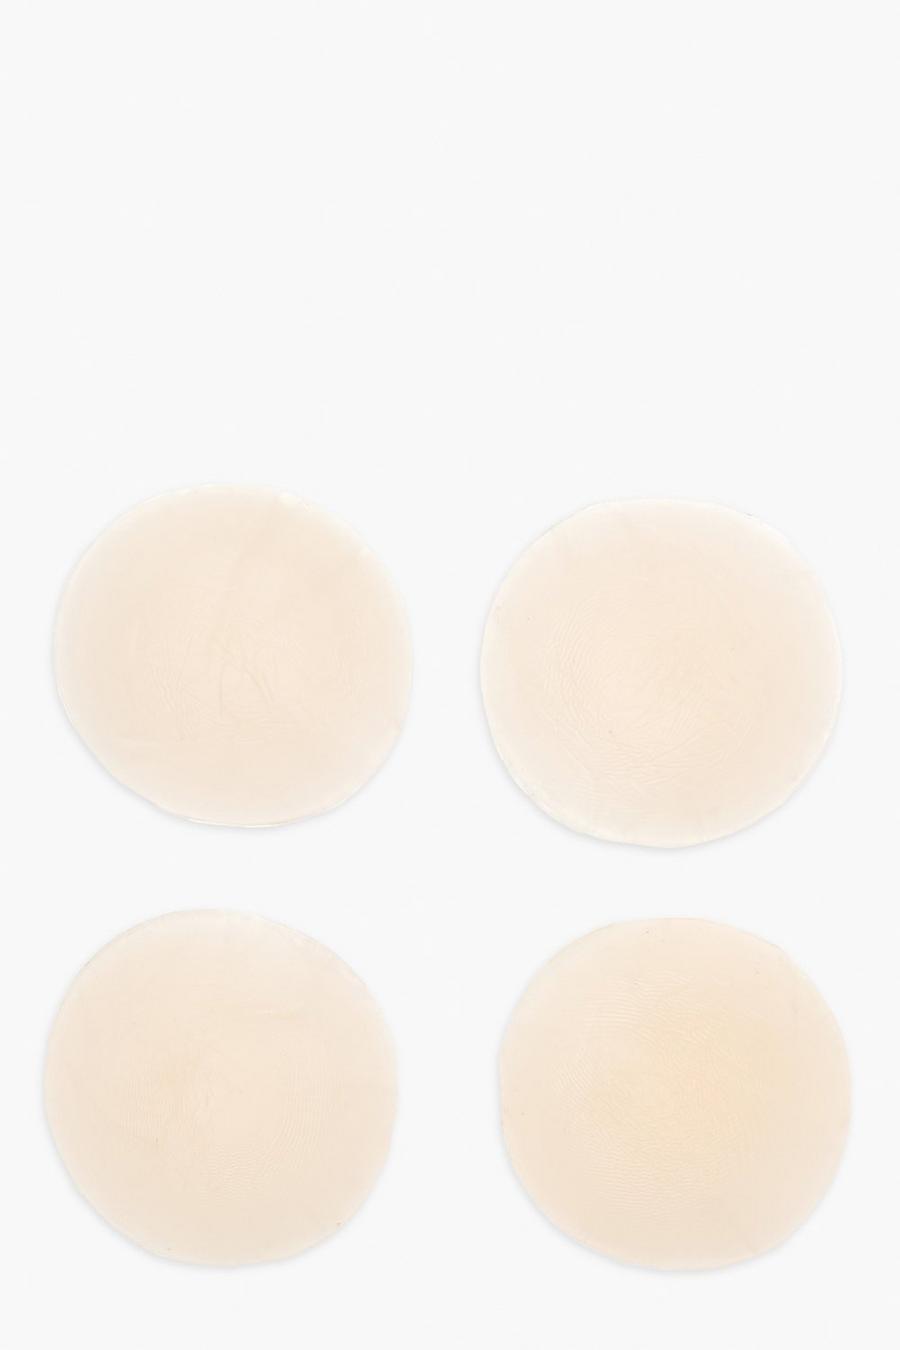 Boohoo Beauty - Copricapezzoli in silicone - set di 2, Natural beige